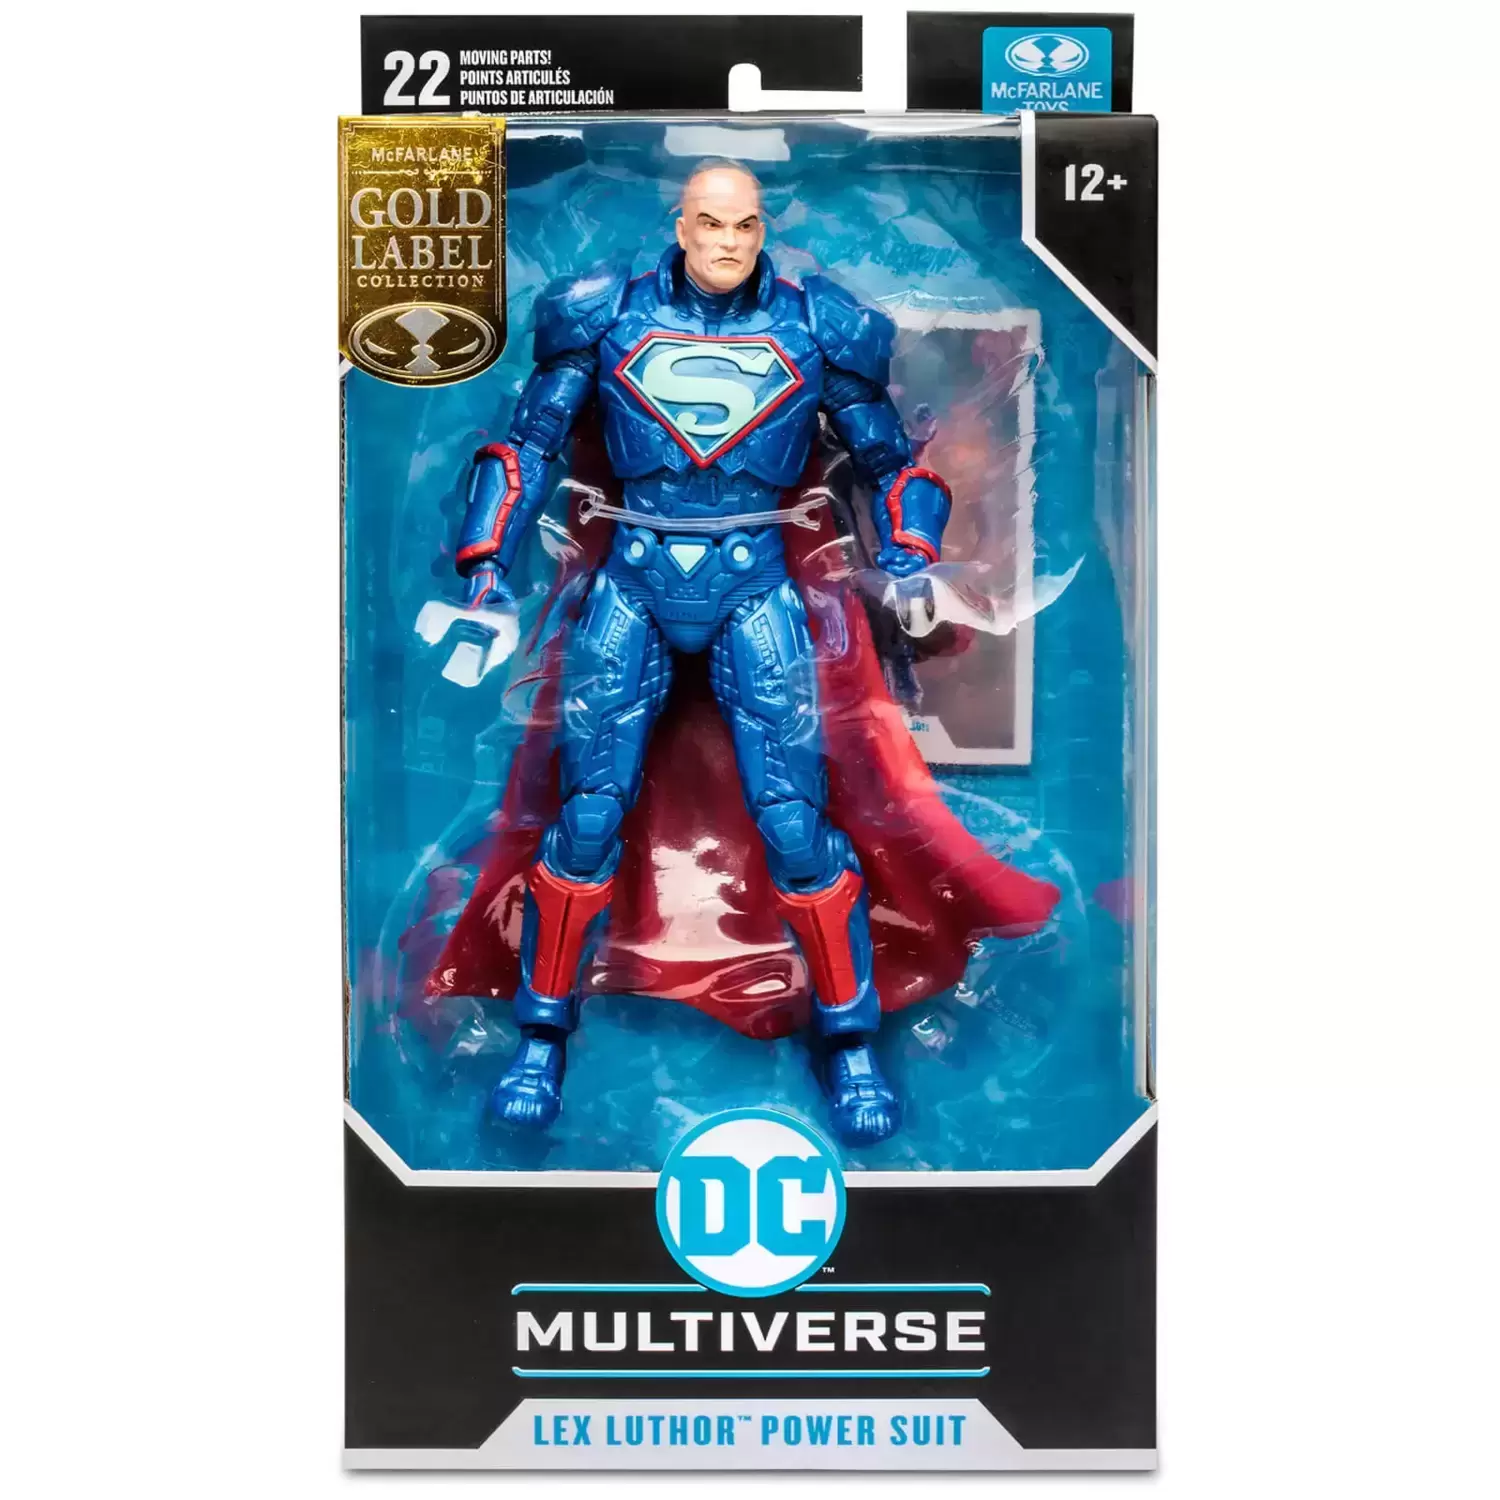 McFarlane - DC Multiverse - Lex Luthor Power Suit - SDCC Variant (Gold Label)